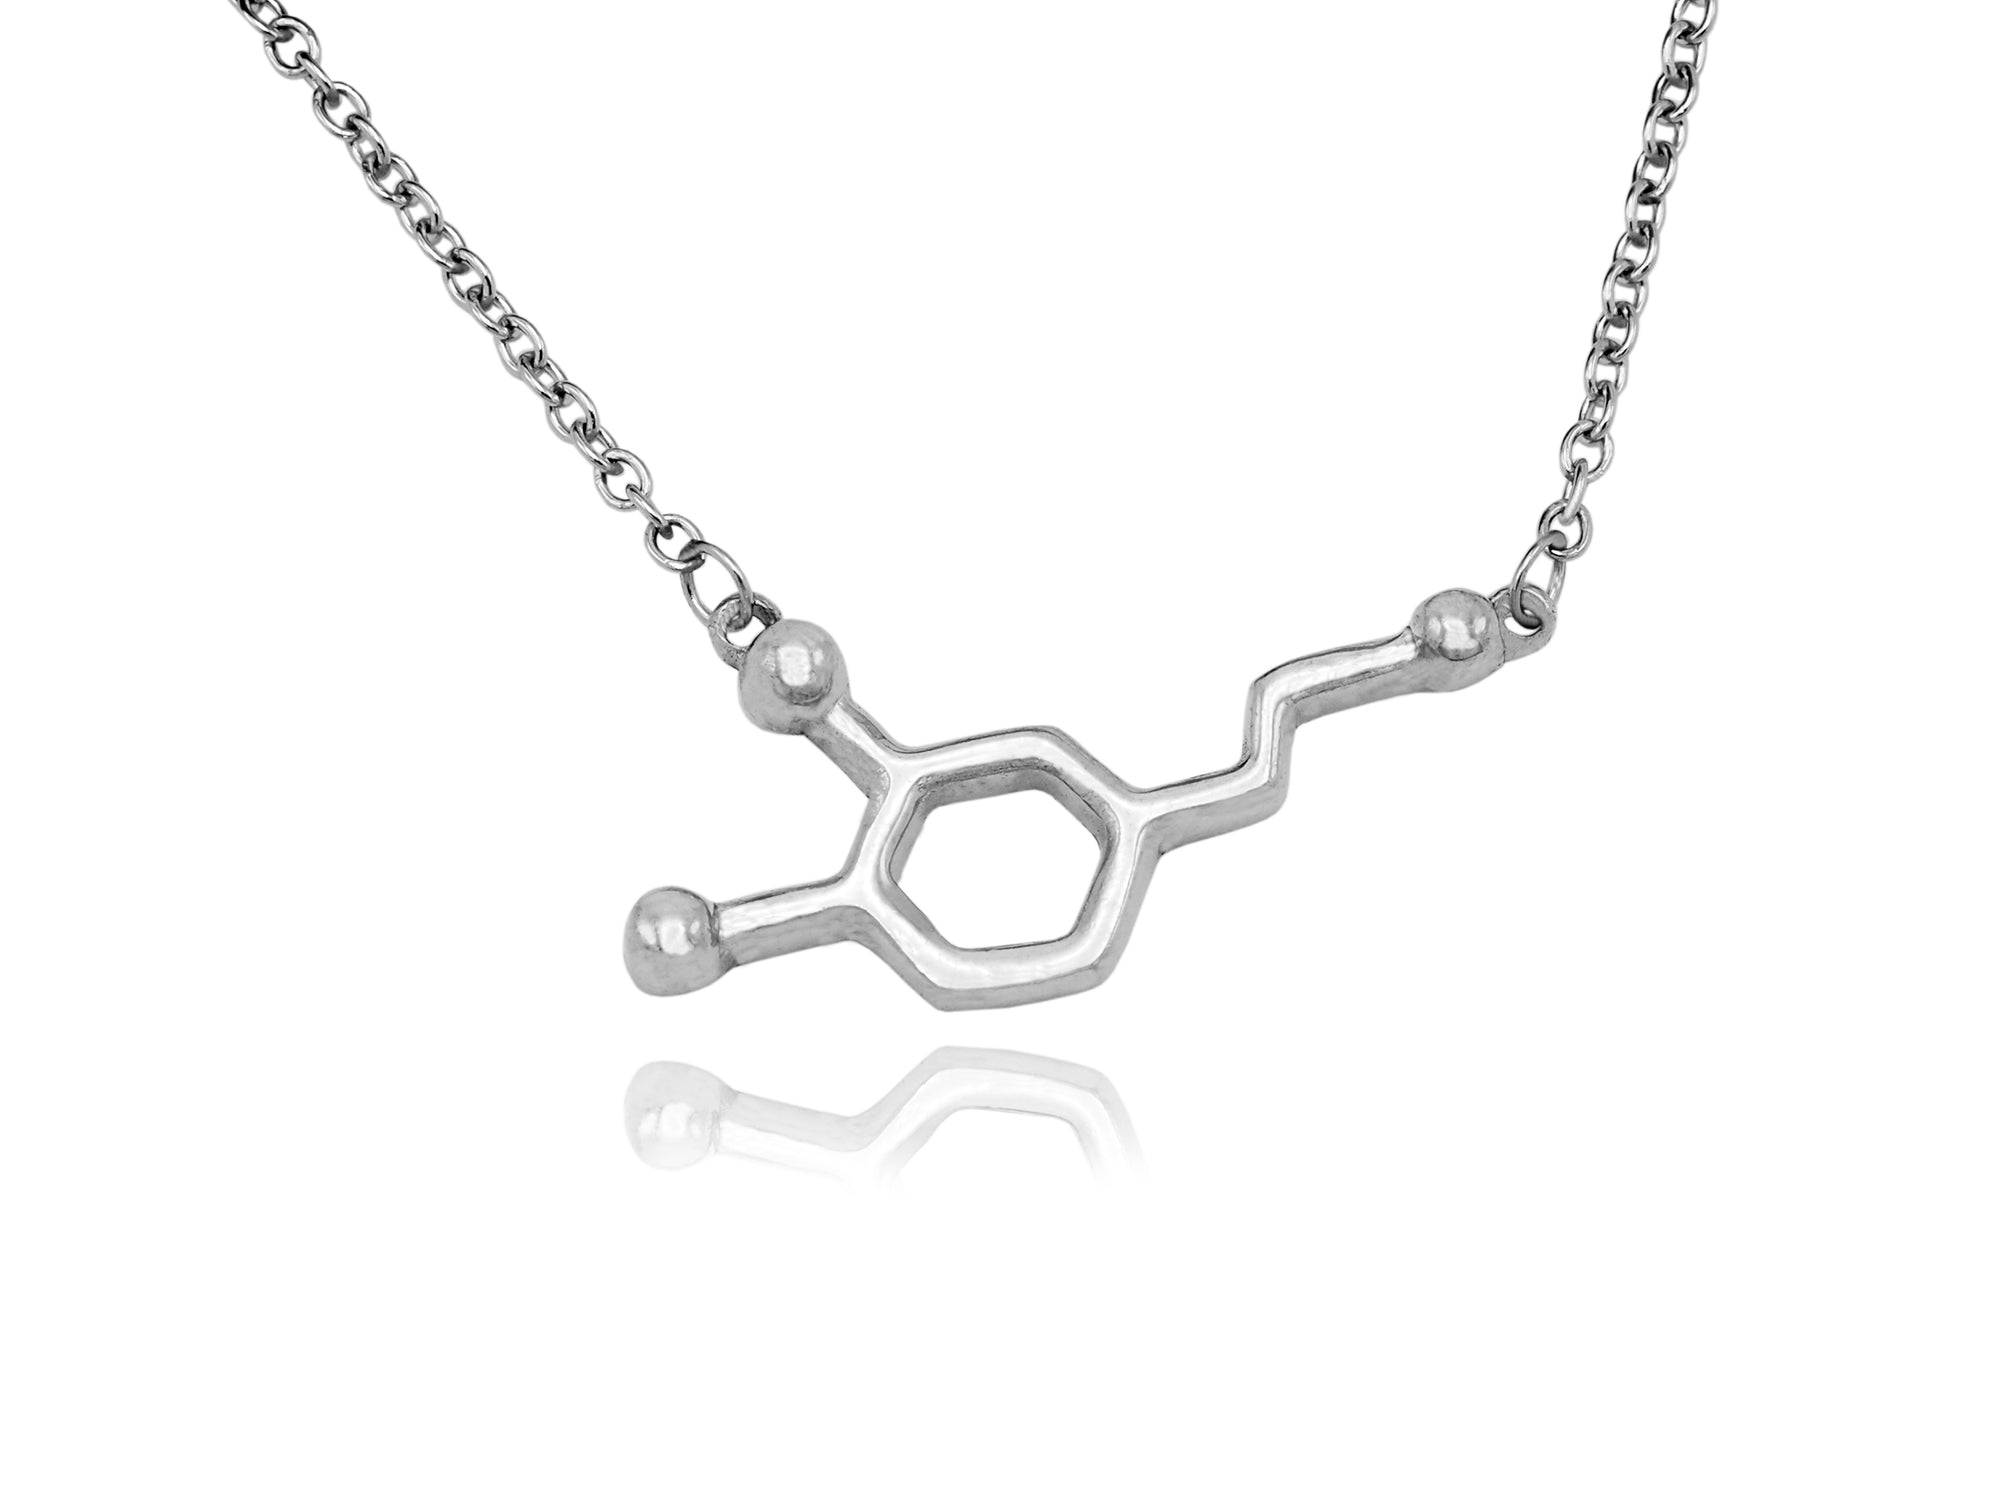 Serotonin Necklace — ipreferyoucallmedoctor